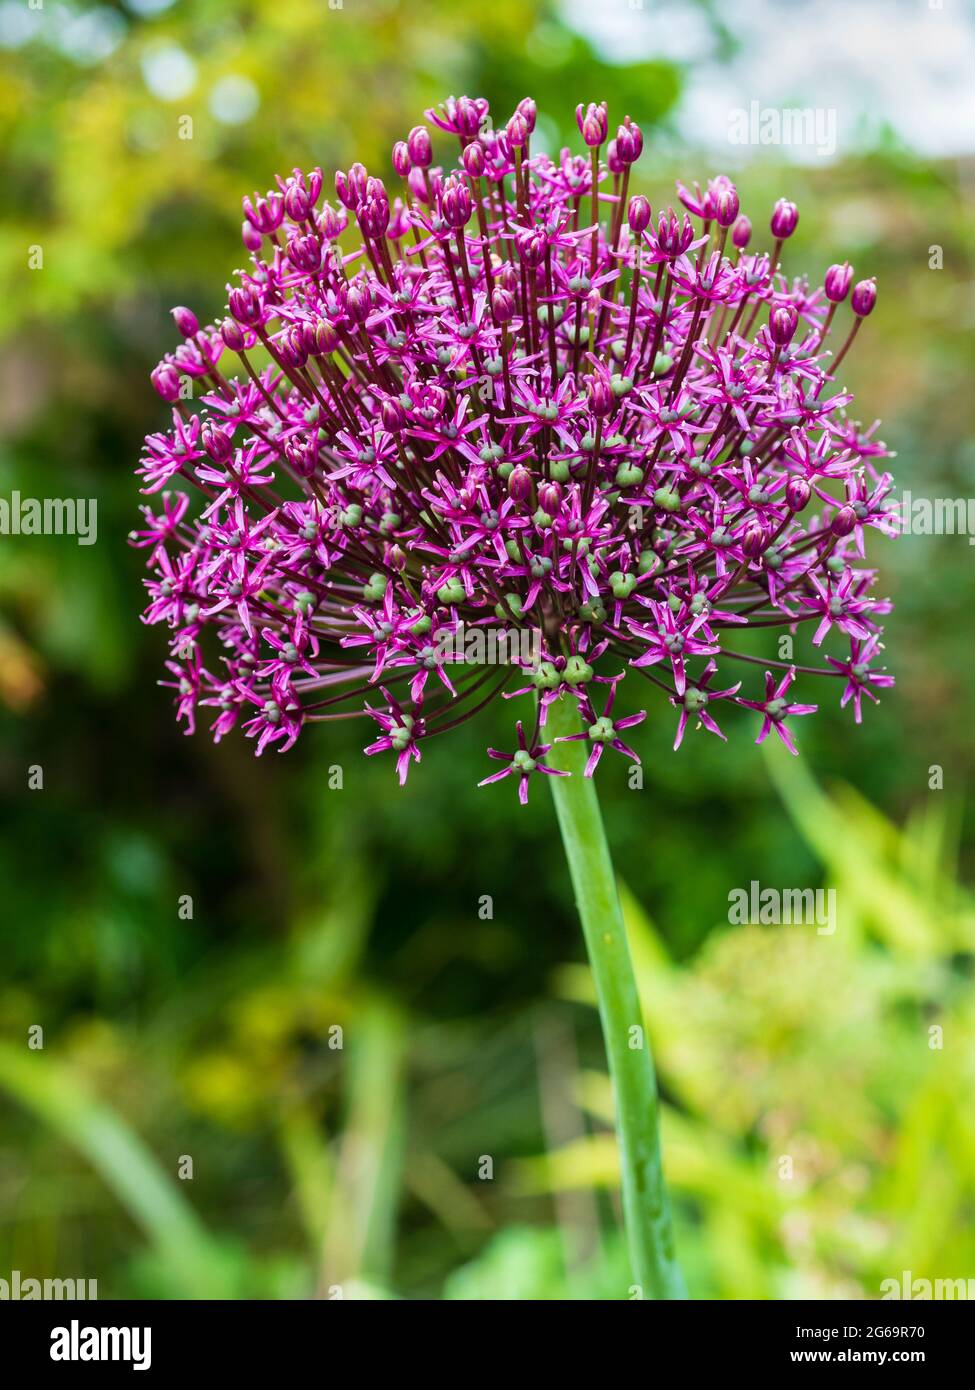 Umgekehrte schüsselförmige Blütenköpfe der winterharten, im Frühsommer blühenden Zierzwiebel, Allium 'Miami' Stockfoto